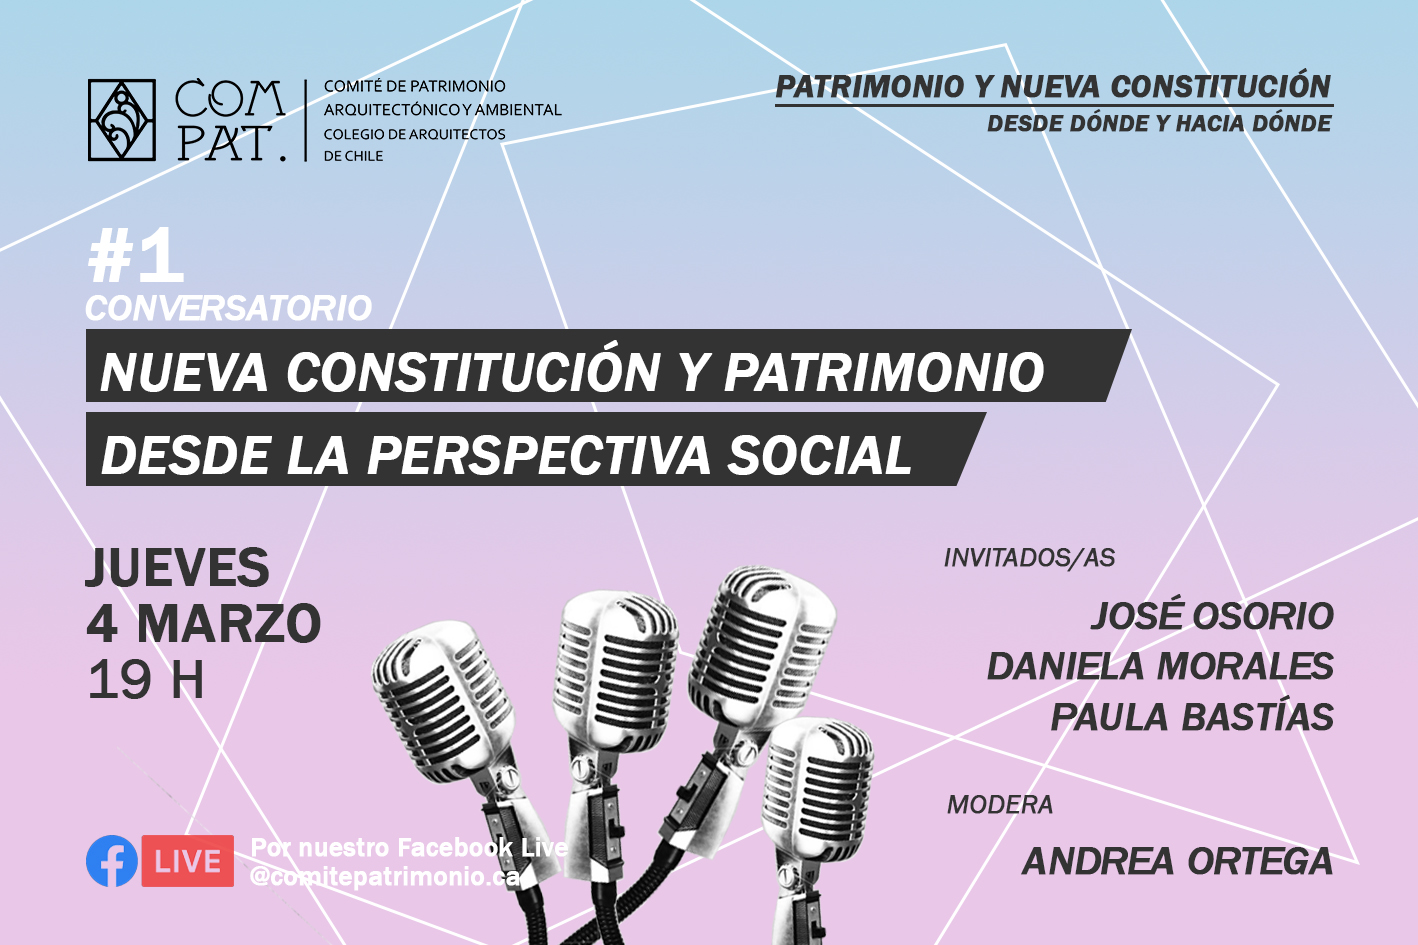 CONVERSATORIO:  PATRIMONIO Y NUEVA CONSTITUCIÓN DESDE LA PERSPECTIVA SOCIAL